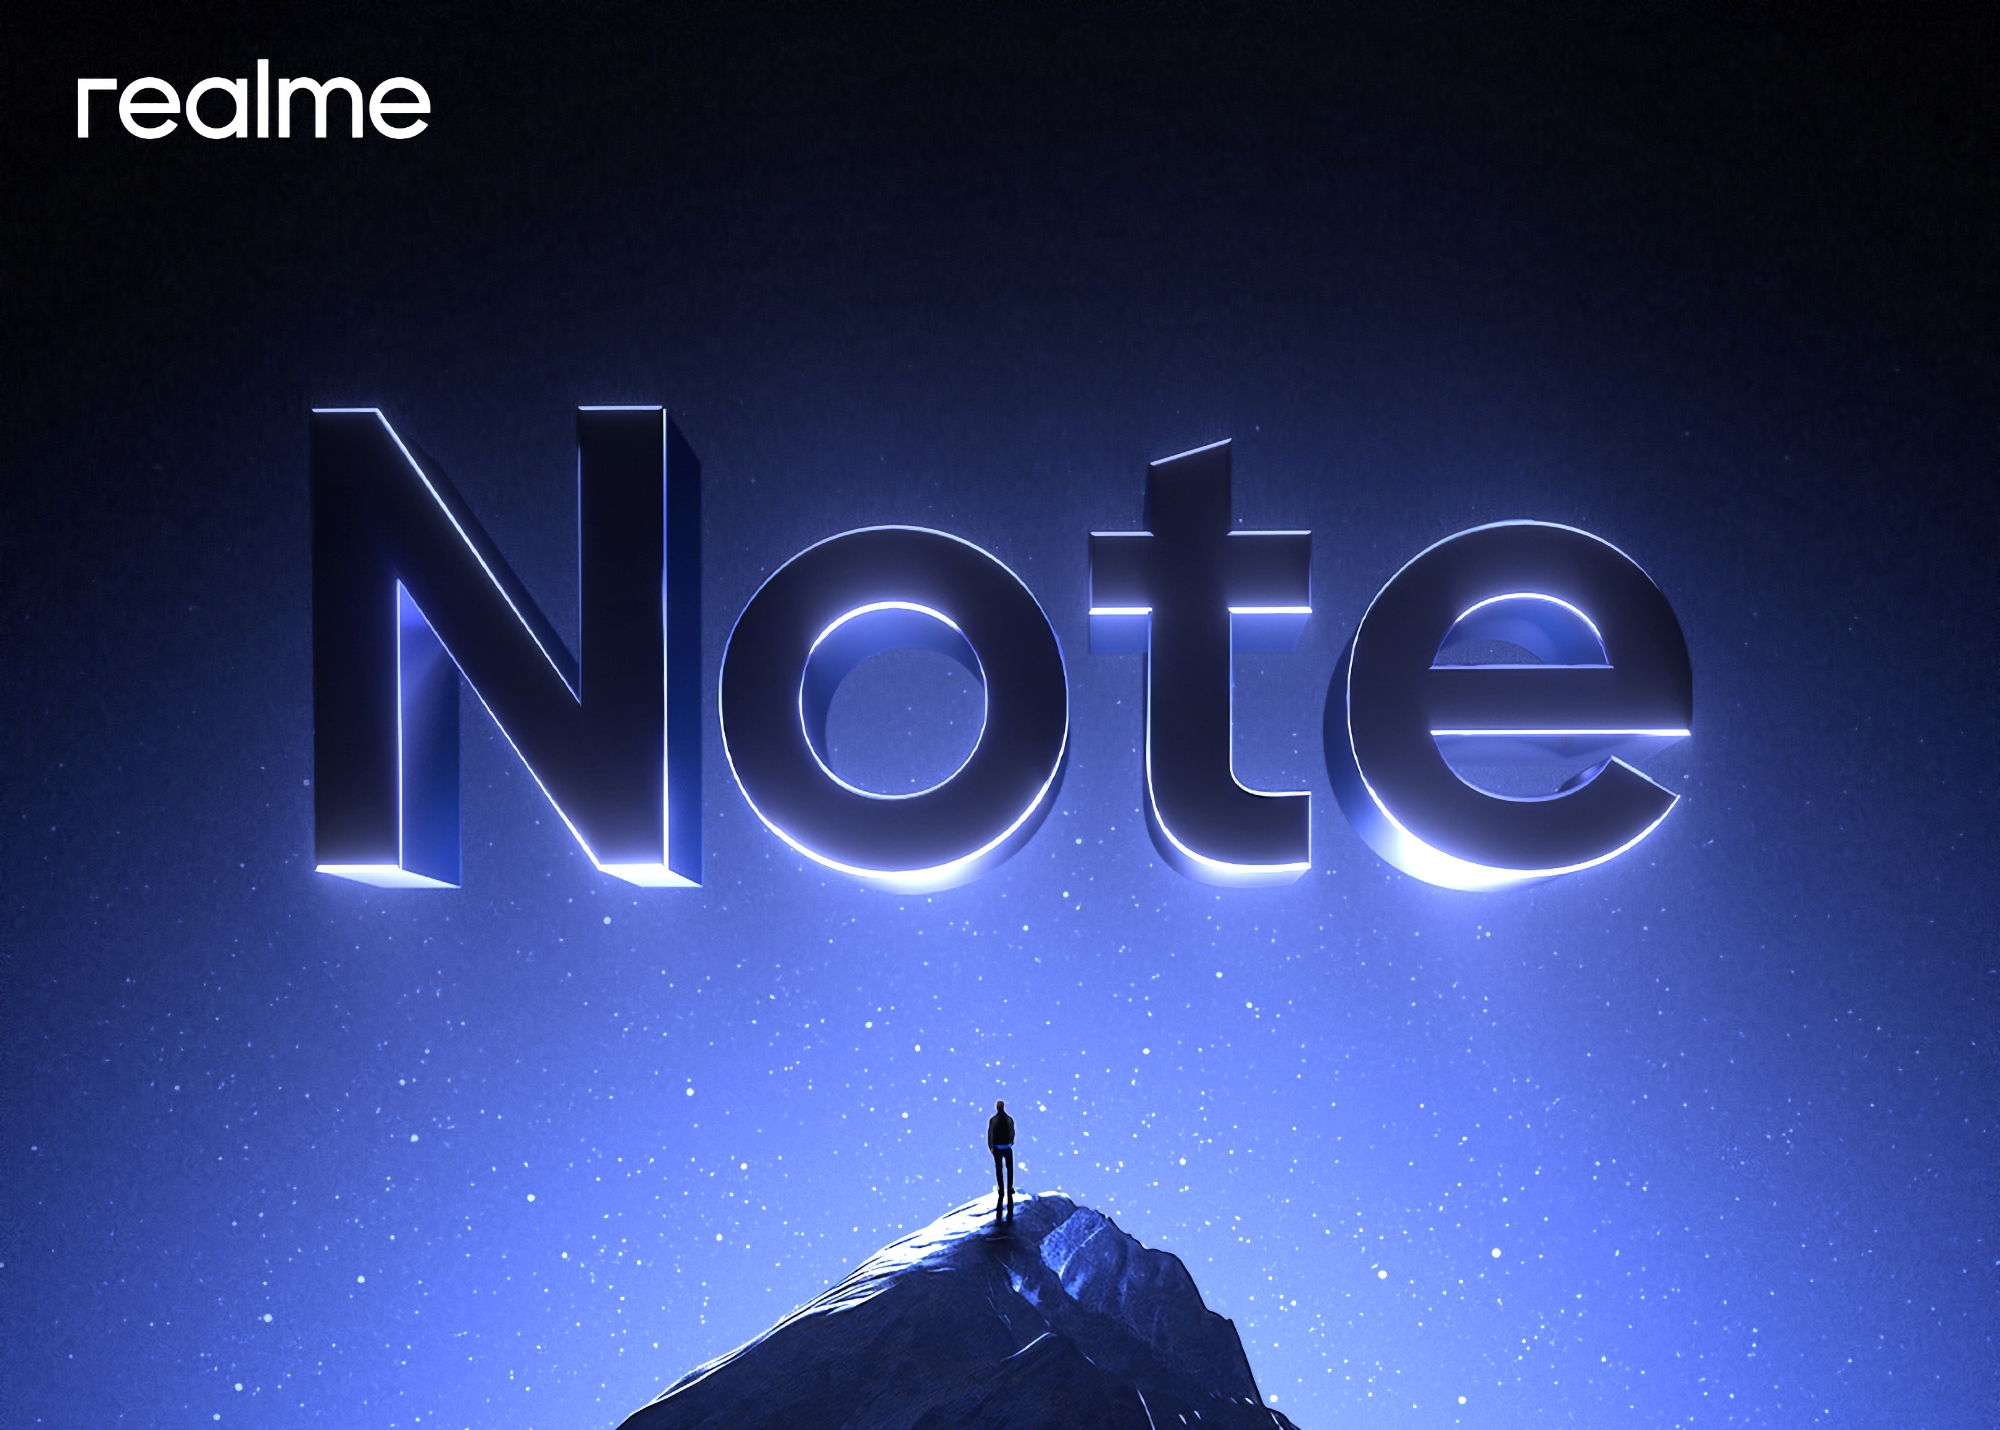 Pour concurrencer le Redmi Note ?, Realme s'apprête à lancer une nouvelle série de smartphones baptisée Note.